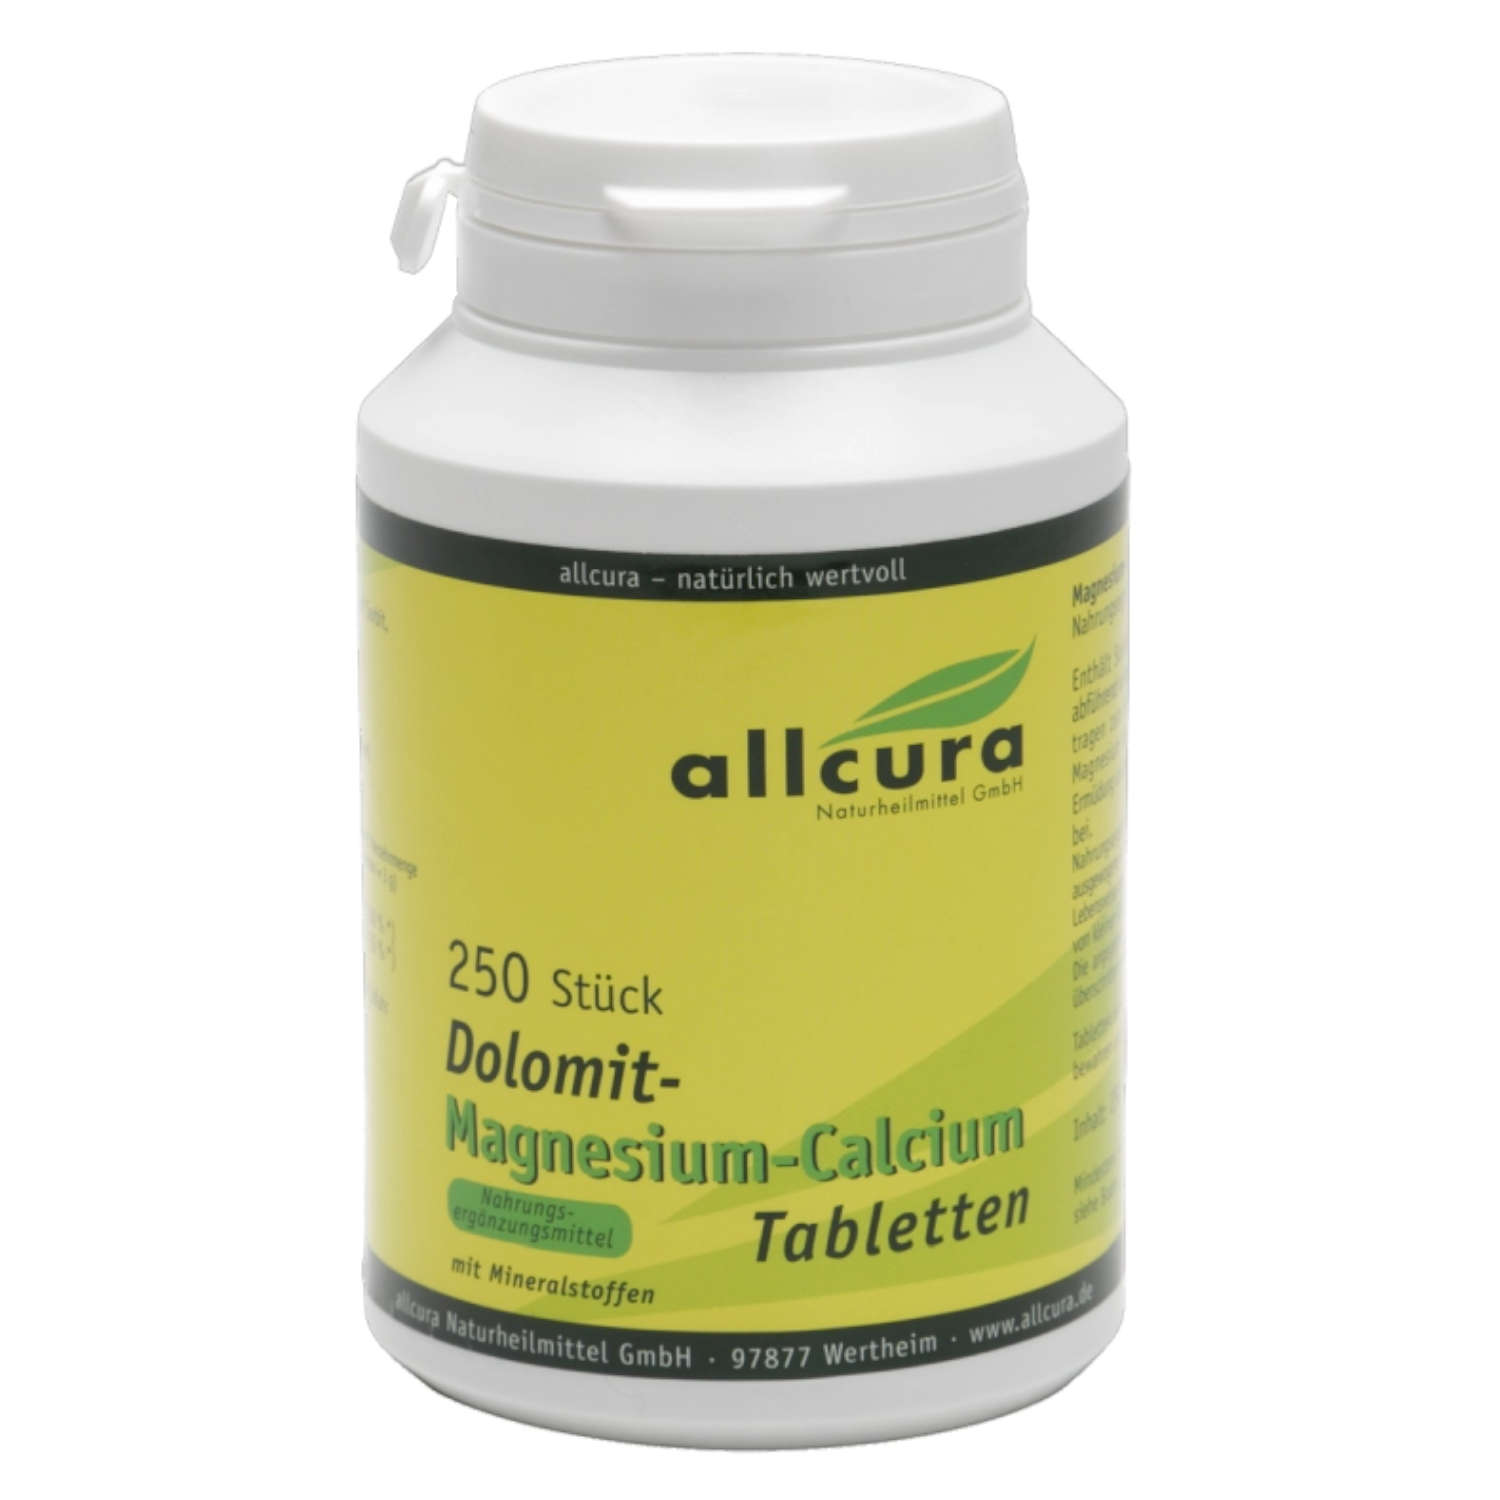 Dolomit-Magnesium-Calcium von Allcura - 250 Tabletten